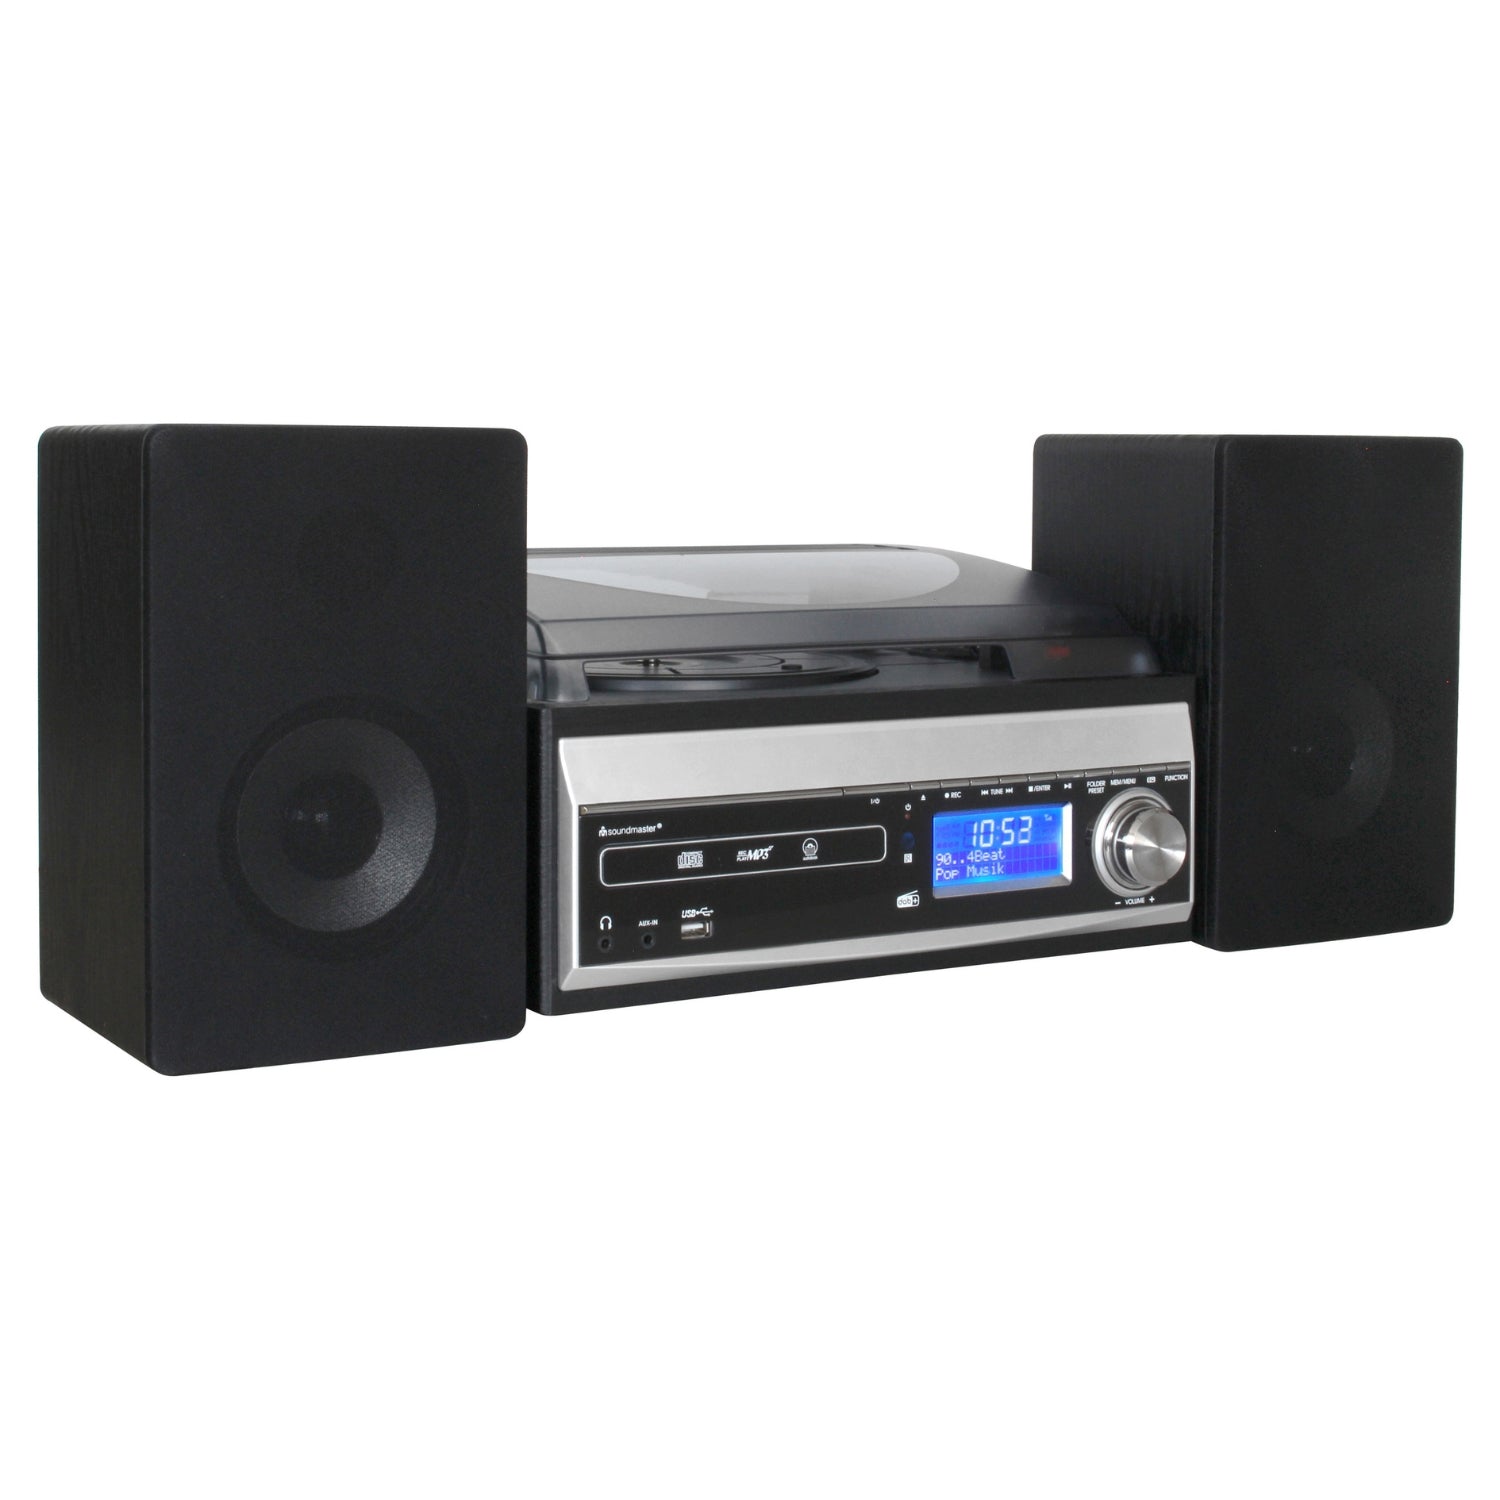 Soundmaster MCD1820SW DAB+ chaîne stéréo compacte lecteur CD platine vinyle encodage USB SD MP3